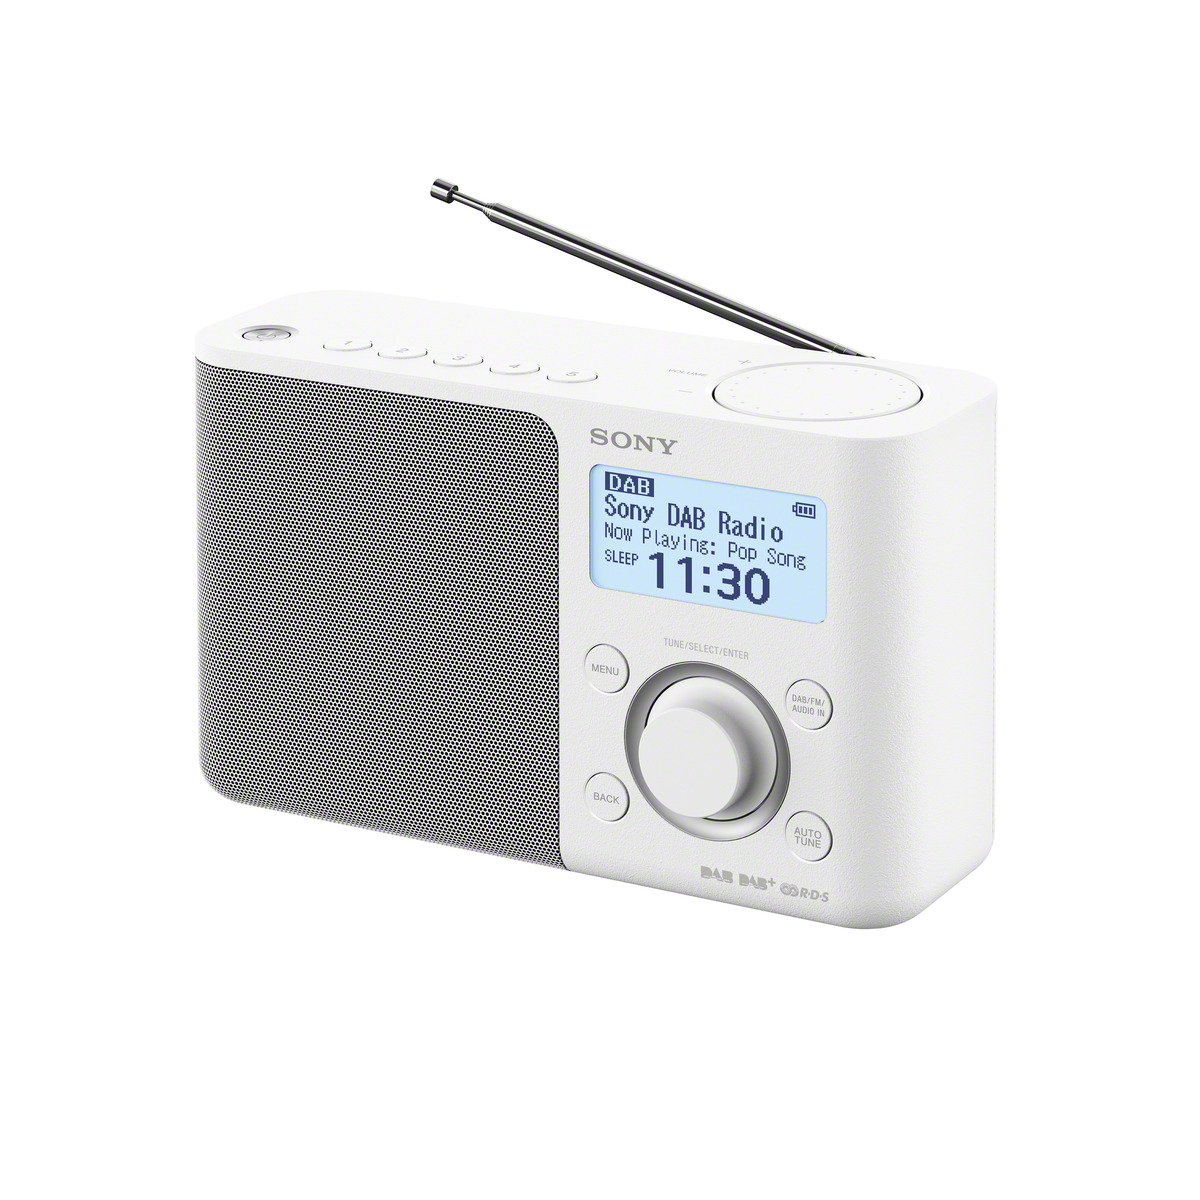 SONY XDR-S61D DAB+ Weiß Radio, DAB+, DAB, FM, digital